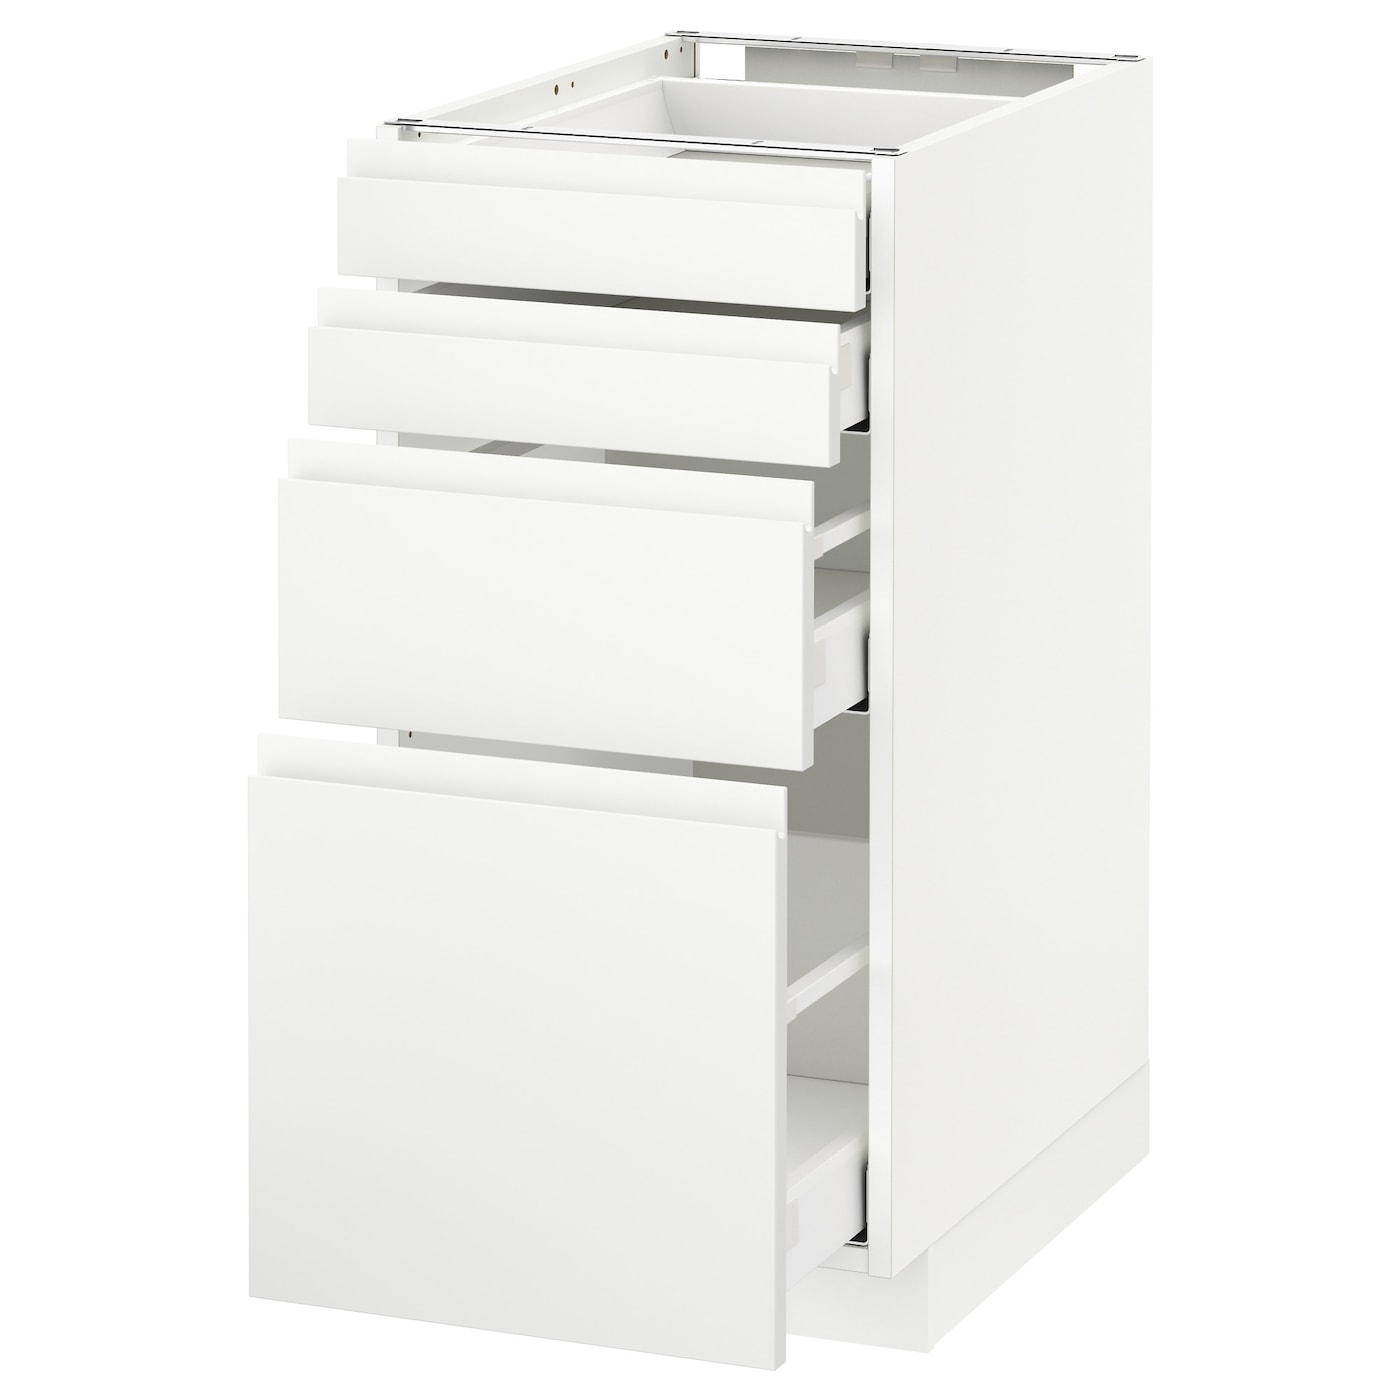 Напольный кухонный шкаф  - IKEA METOD MAXIMERA, 88x62,1x40см, белый, МЕТОД МАКСИМЕРА ИКЕА